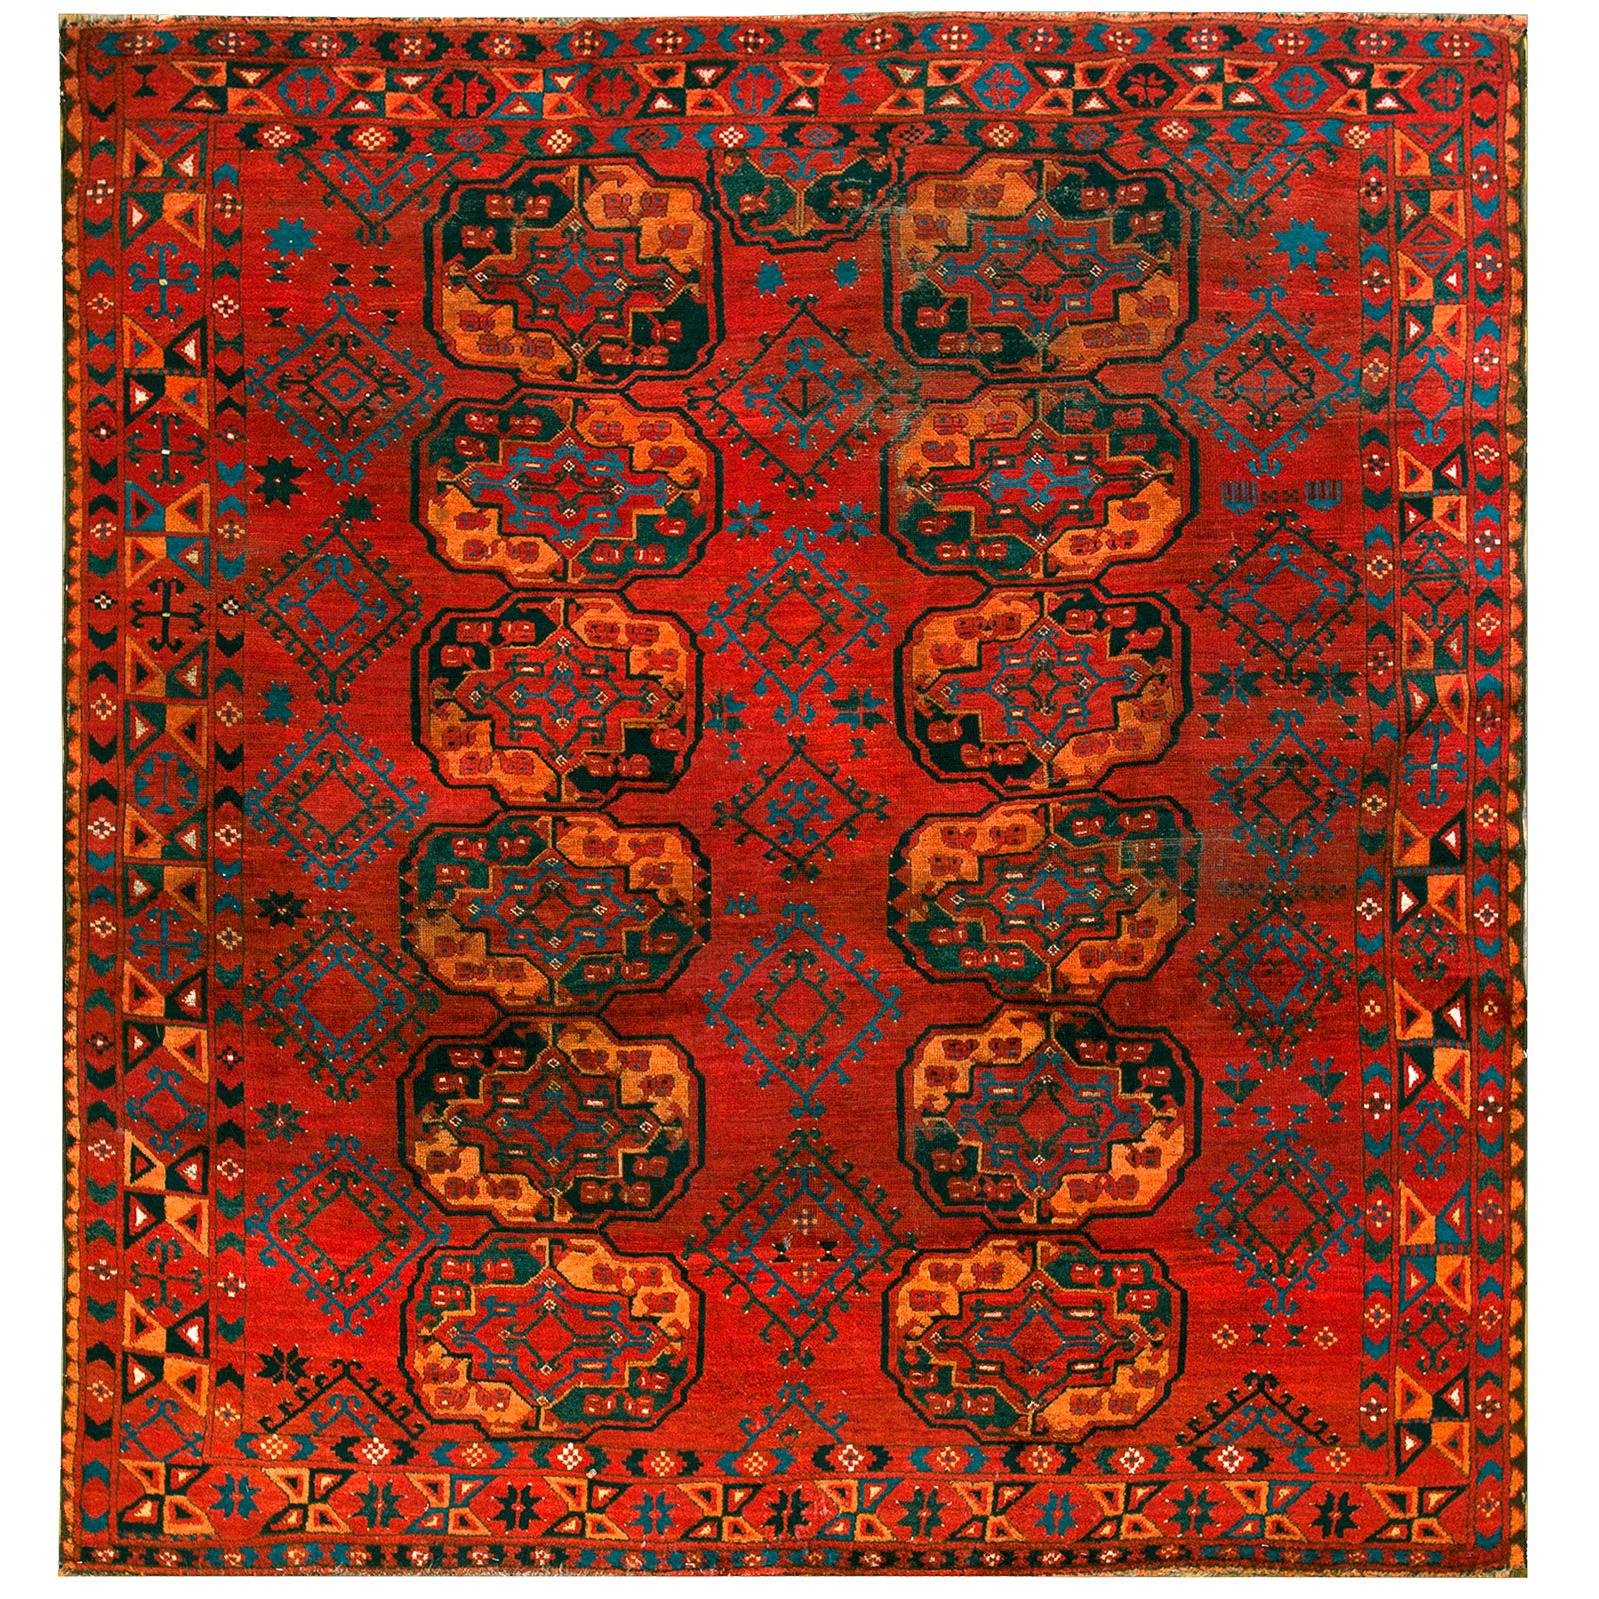 19th Century Central Asian Ersari Turkmen Carpet ( 7'2" x 7'10" - 218 x 240 ) For Sale